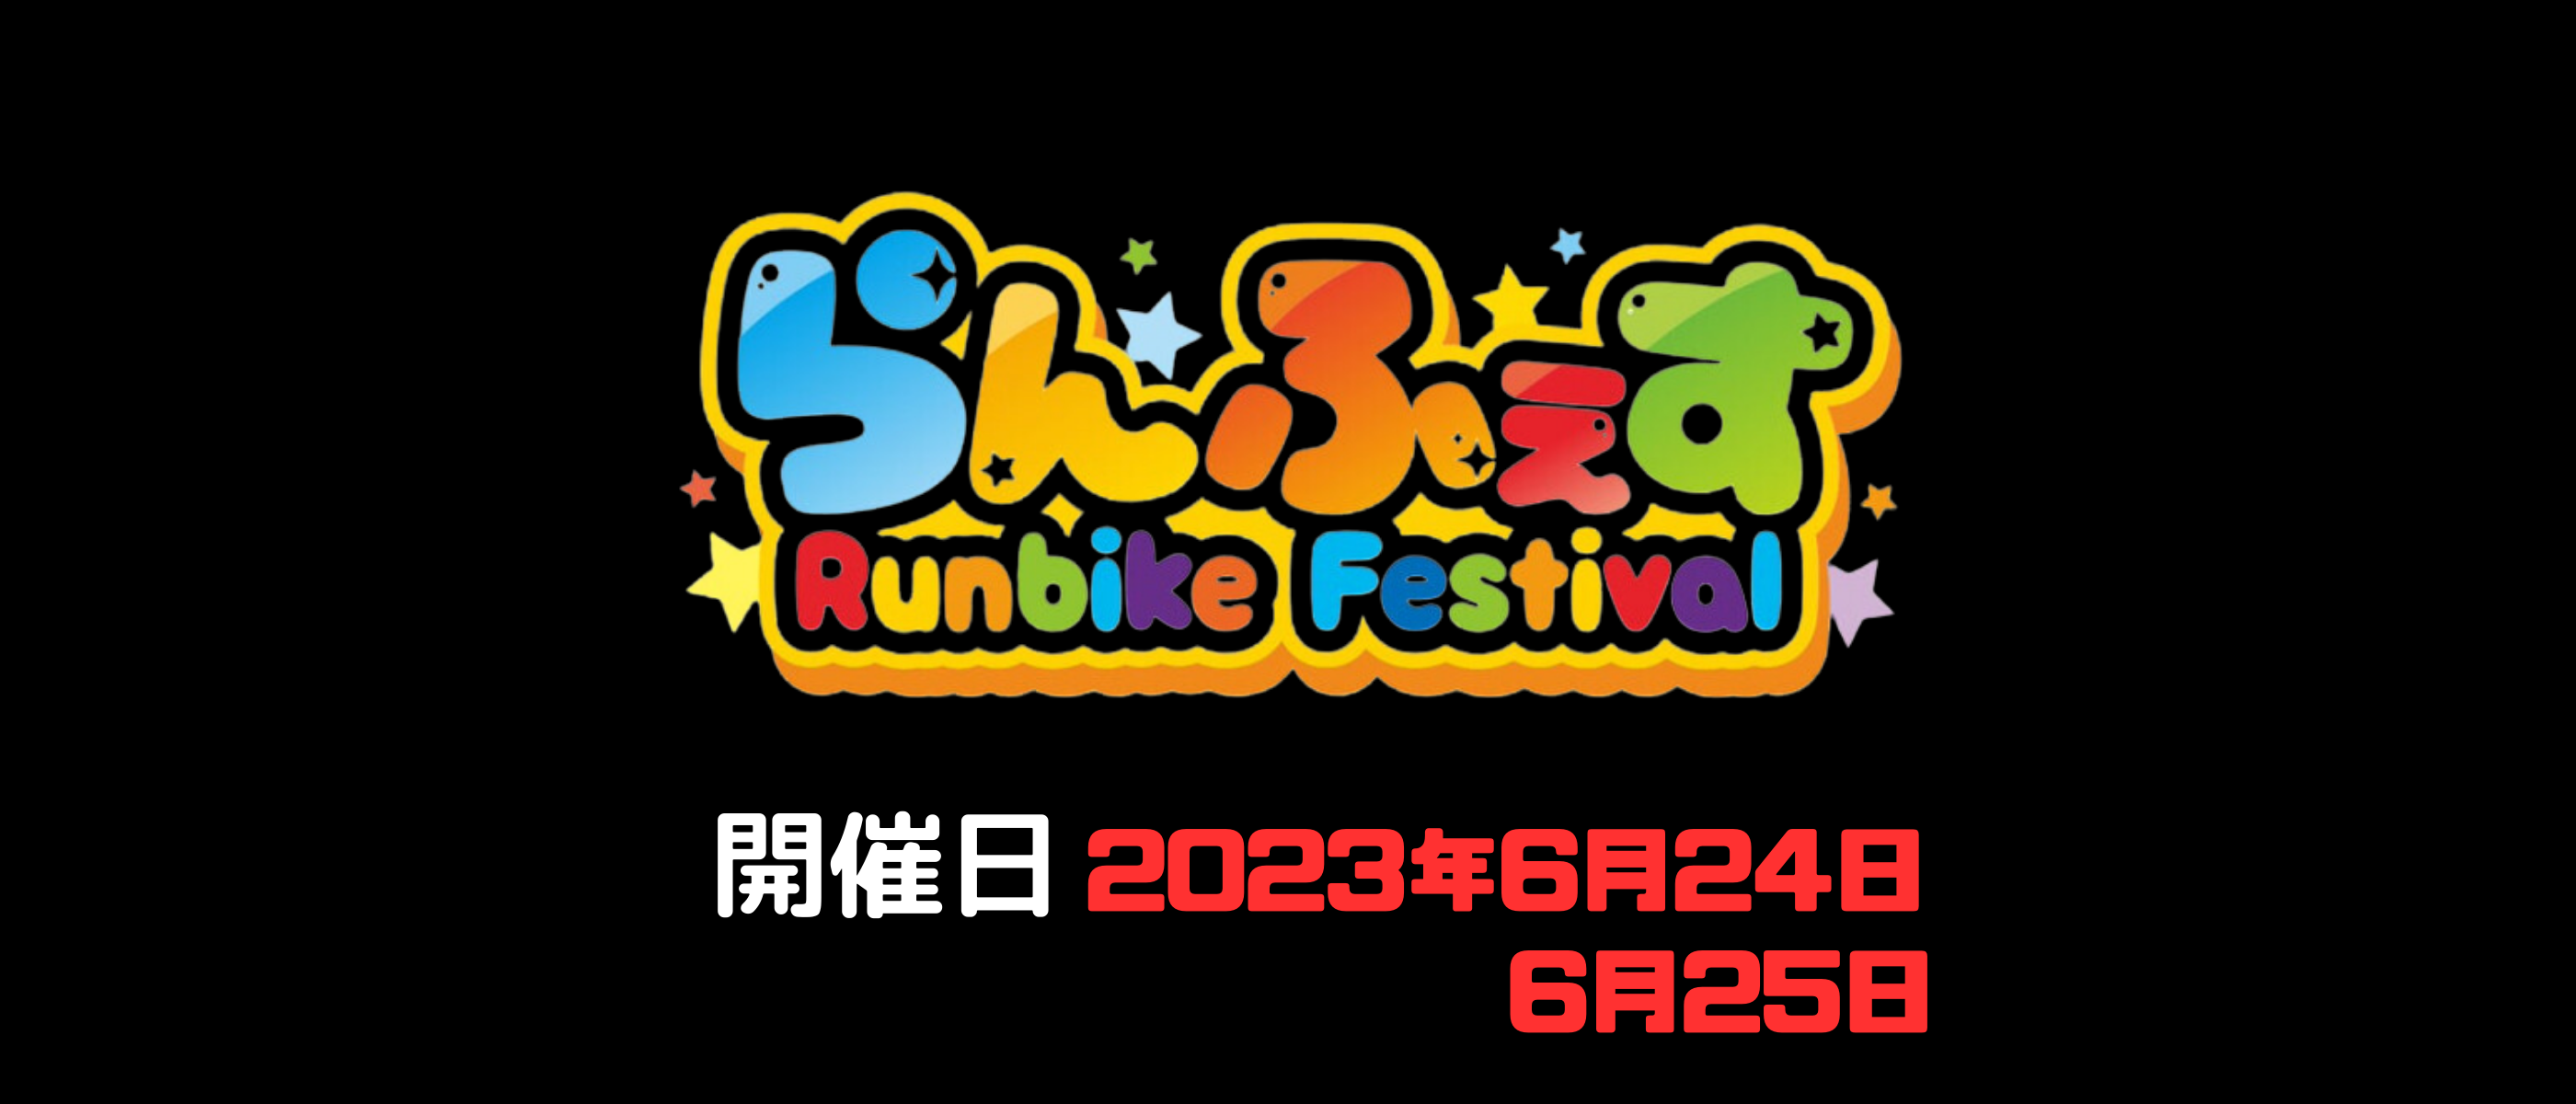 らんふぇす runbike festival